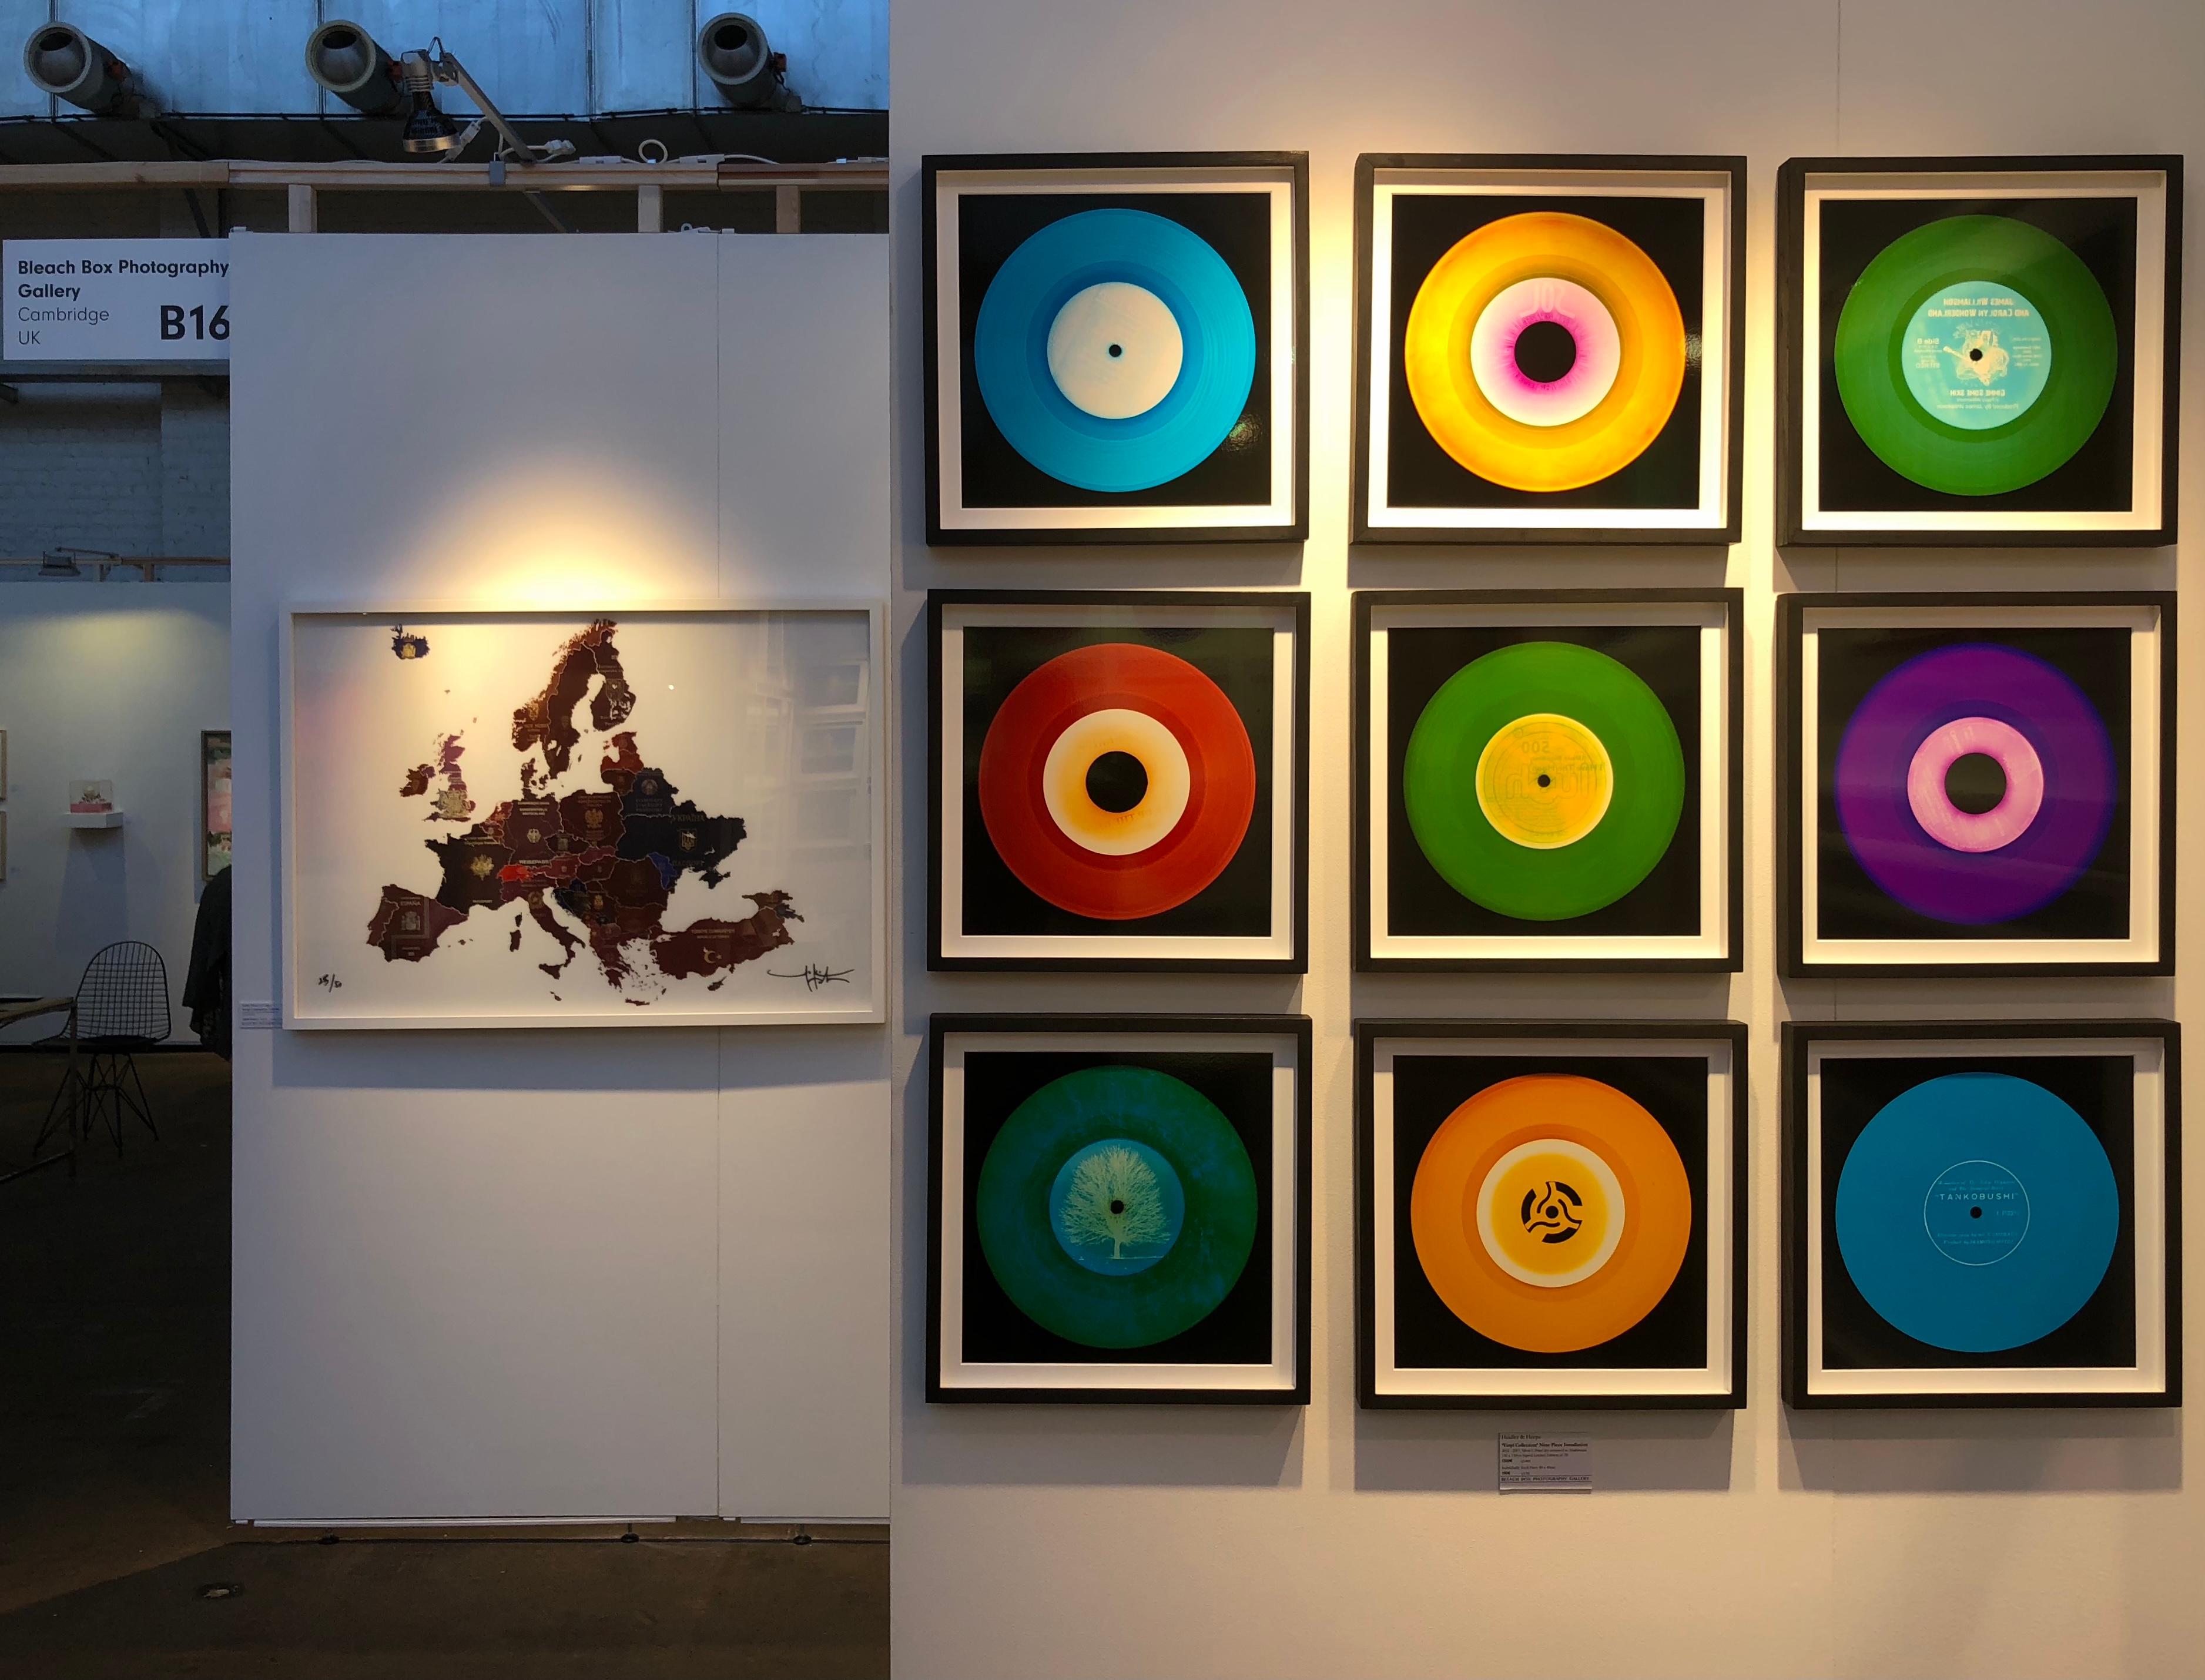 Heidler & Heeps Vinyl Collection Twenty-One Piece Rainbow Installation.
Die renommierten zeitgenössischen Fotografen Richard Heeps und Natasha Heidler haben für diese wunderschöne, faszinierende Kollektion zusammengearbeitet. Ein Fest der